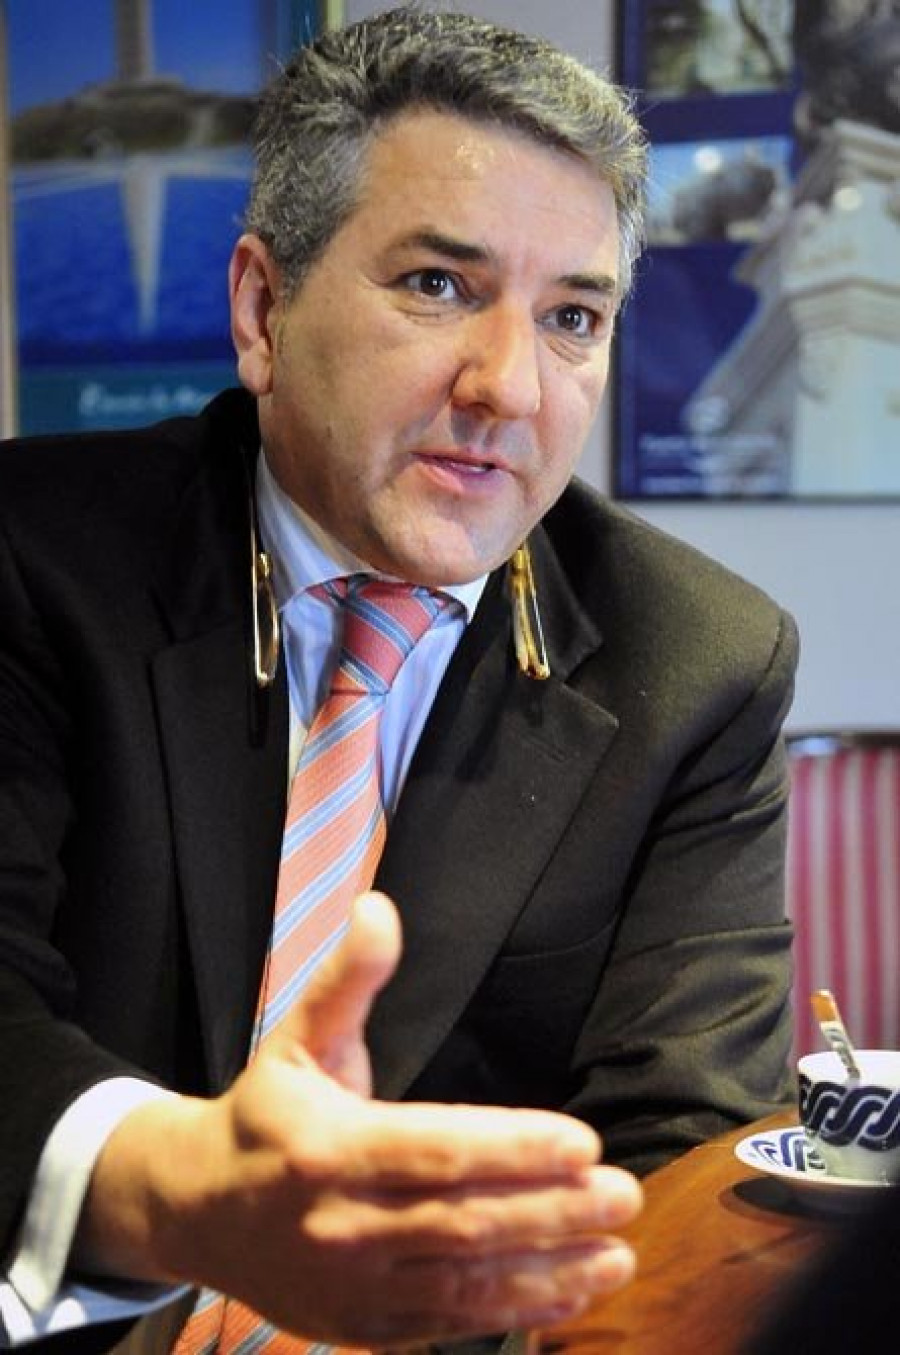 “Rodríguez Cebrián jamás ha puesto un euro en Unión Coruñesa”